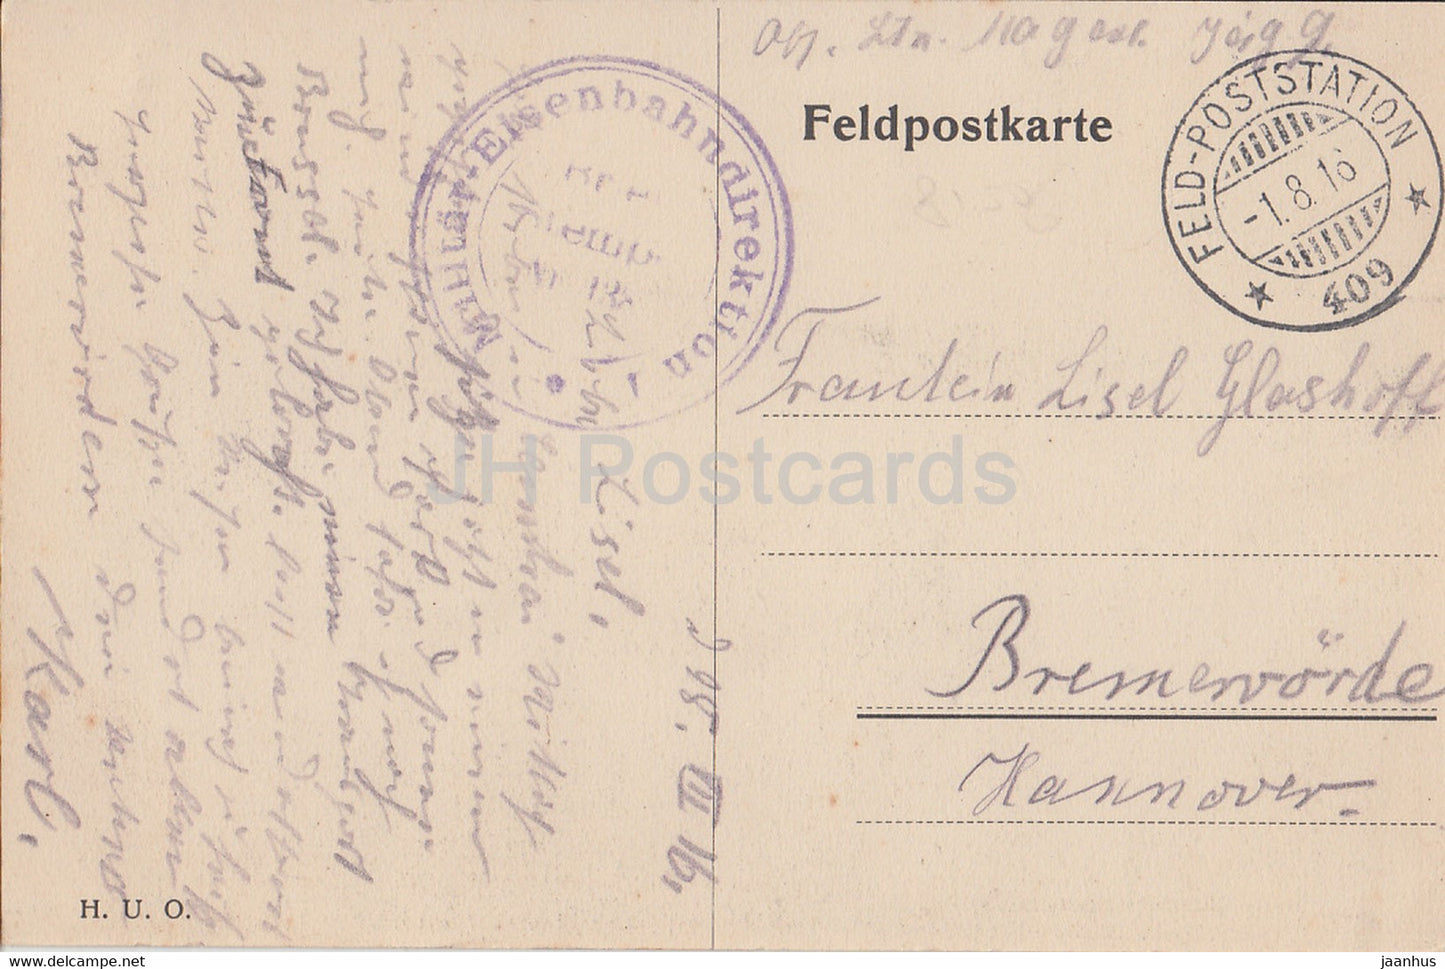 Cambrai - Pariser Tor mit Notre Dame Turm - alte Postkarte - Feldpost - 1916 - Frankreich - gebraucht